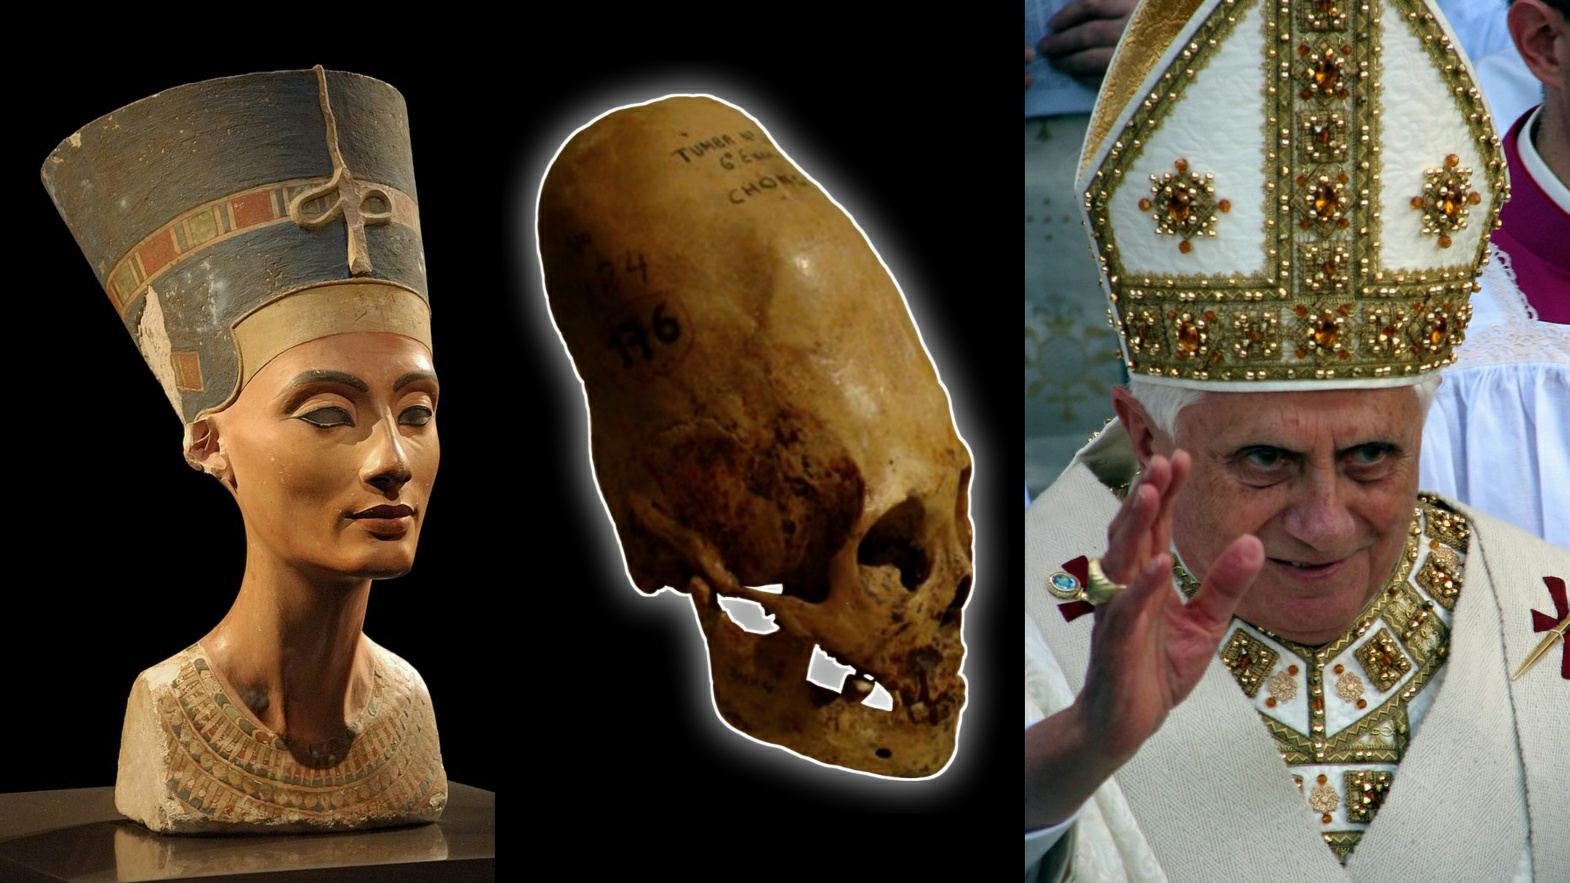 Kraljica Nefertiti, podolgovate lobanje in papeževa mitra